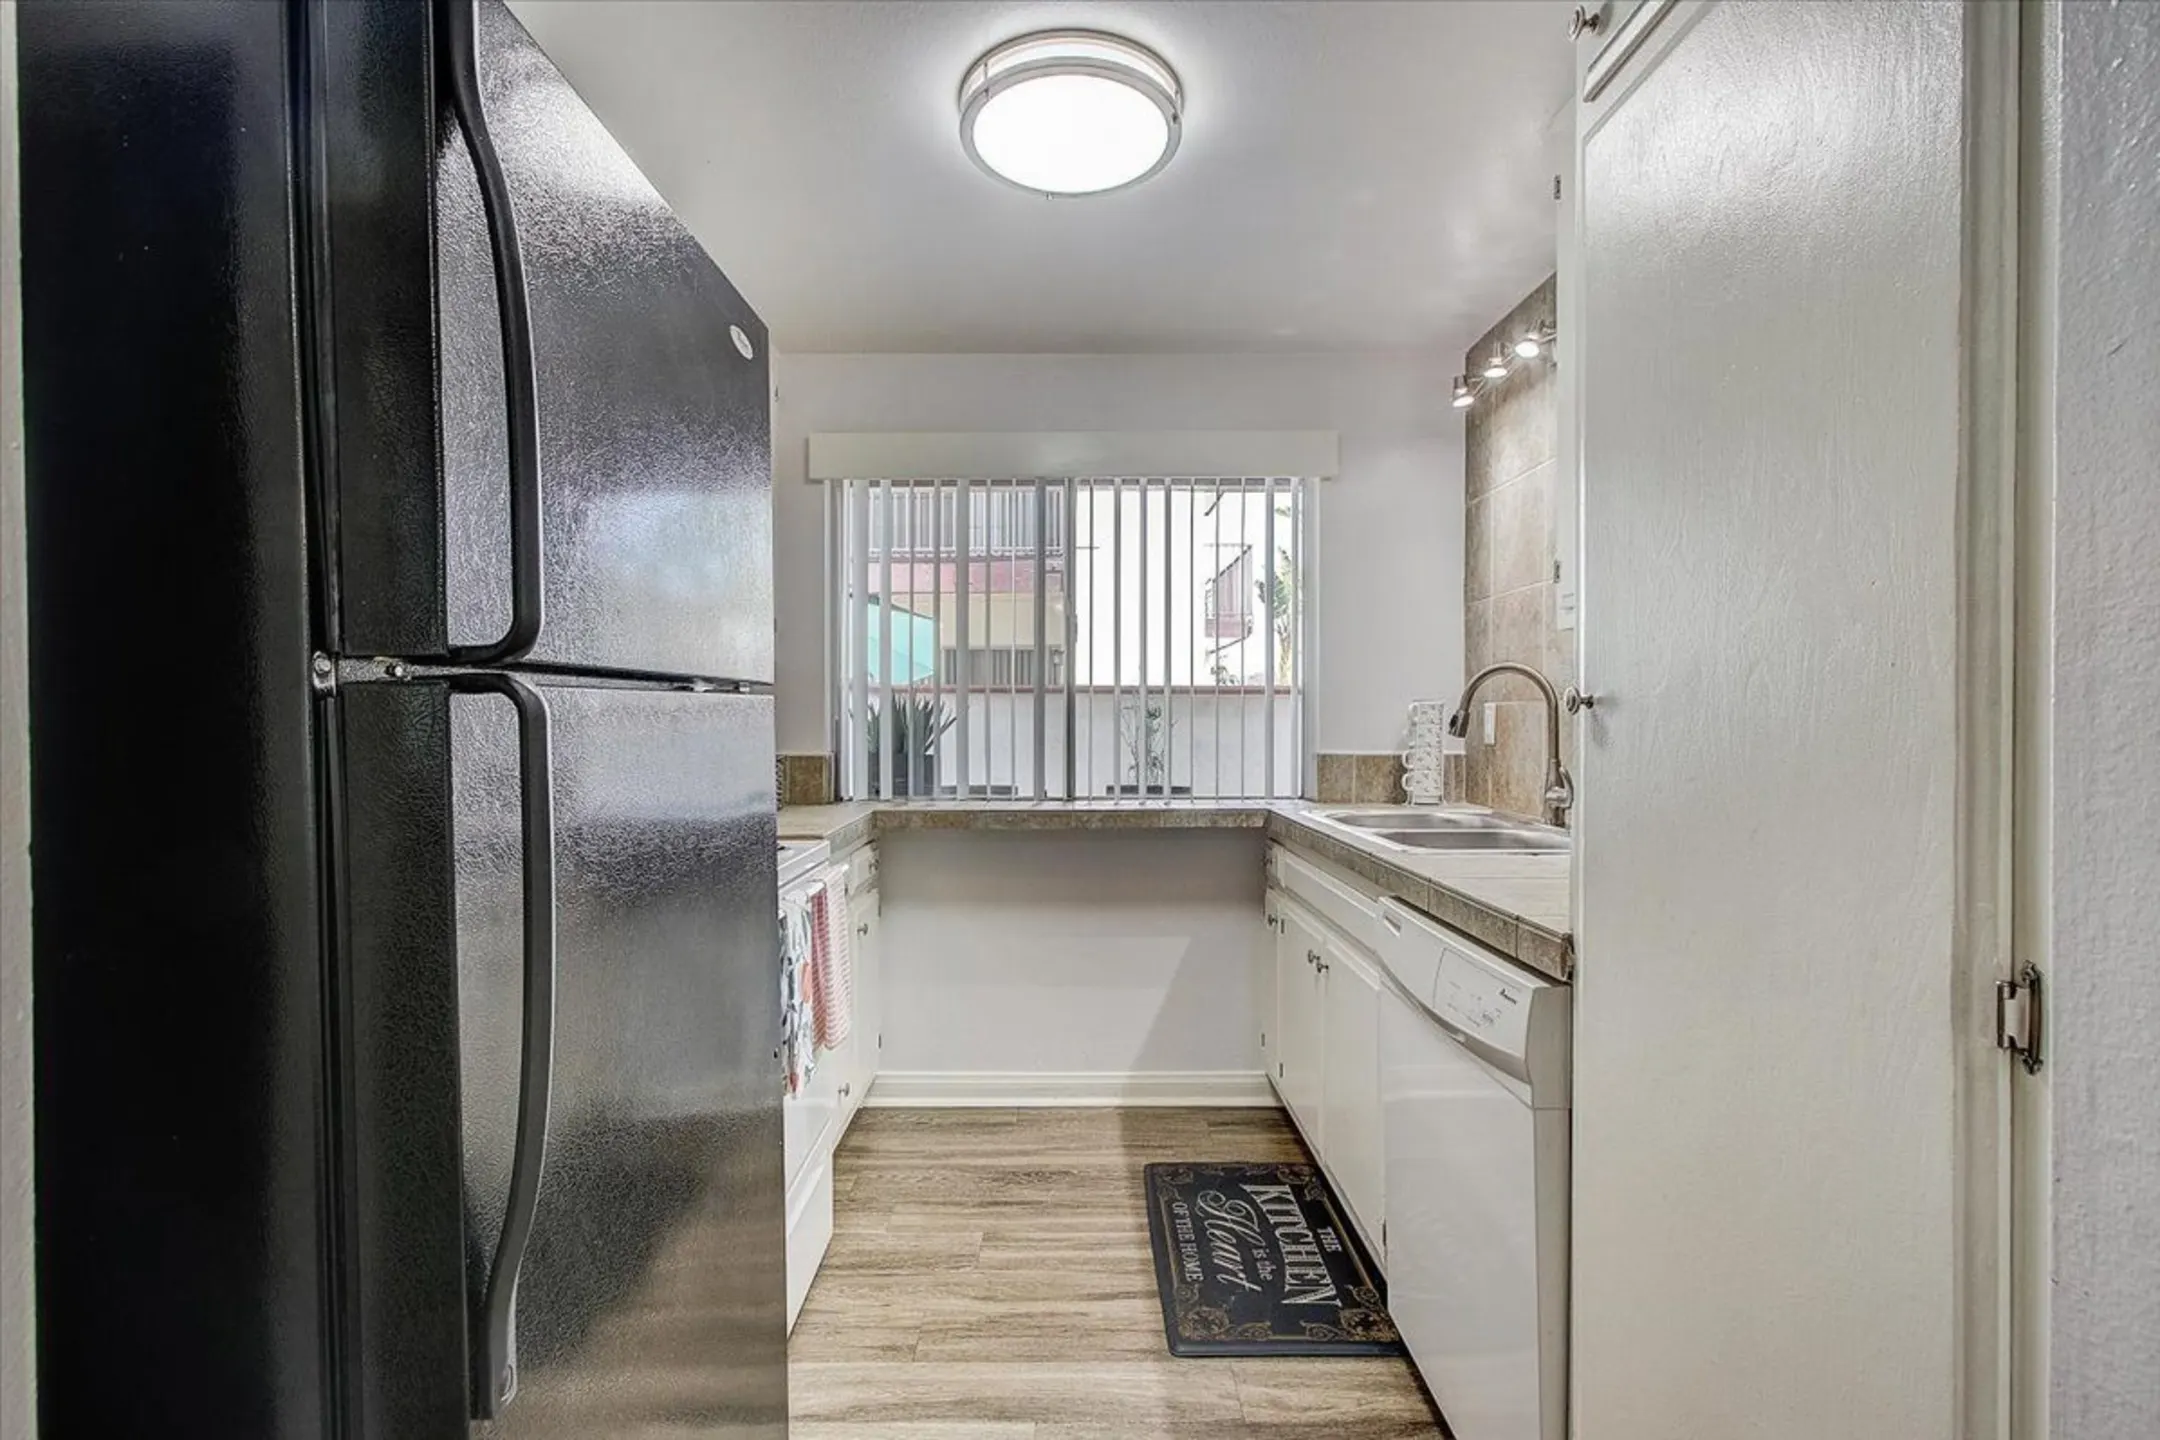 Kitchen - El Cordova Apartments - Carson, CA